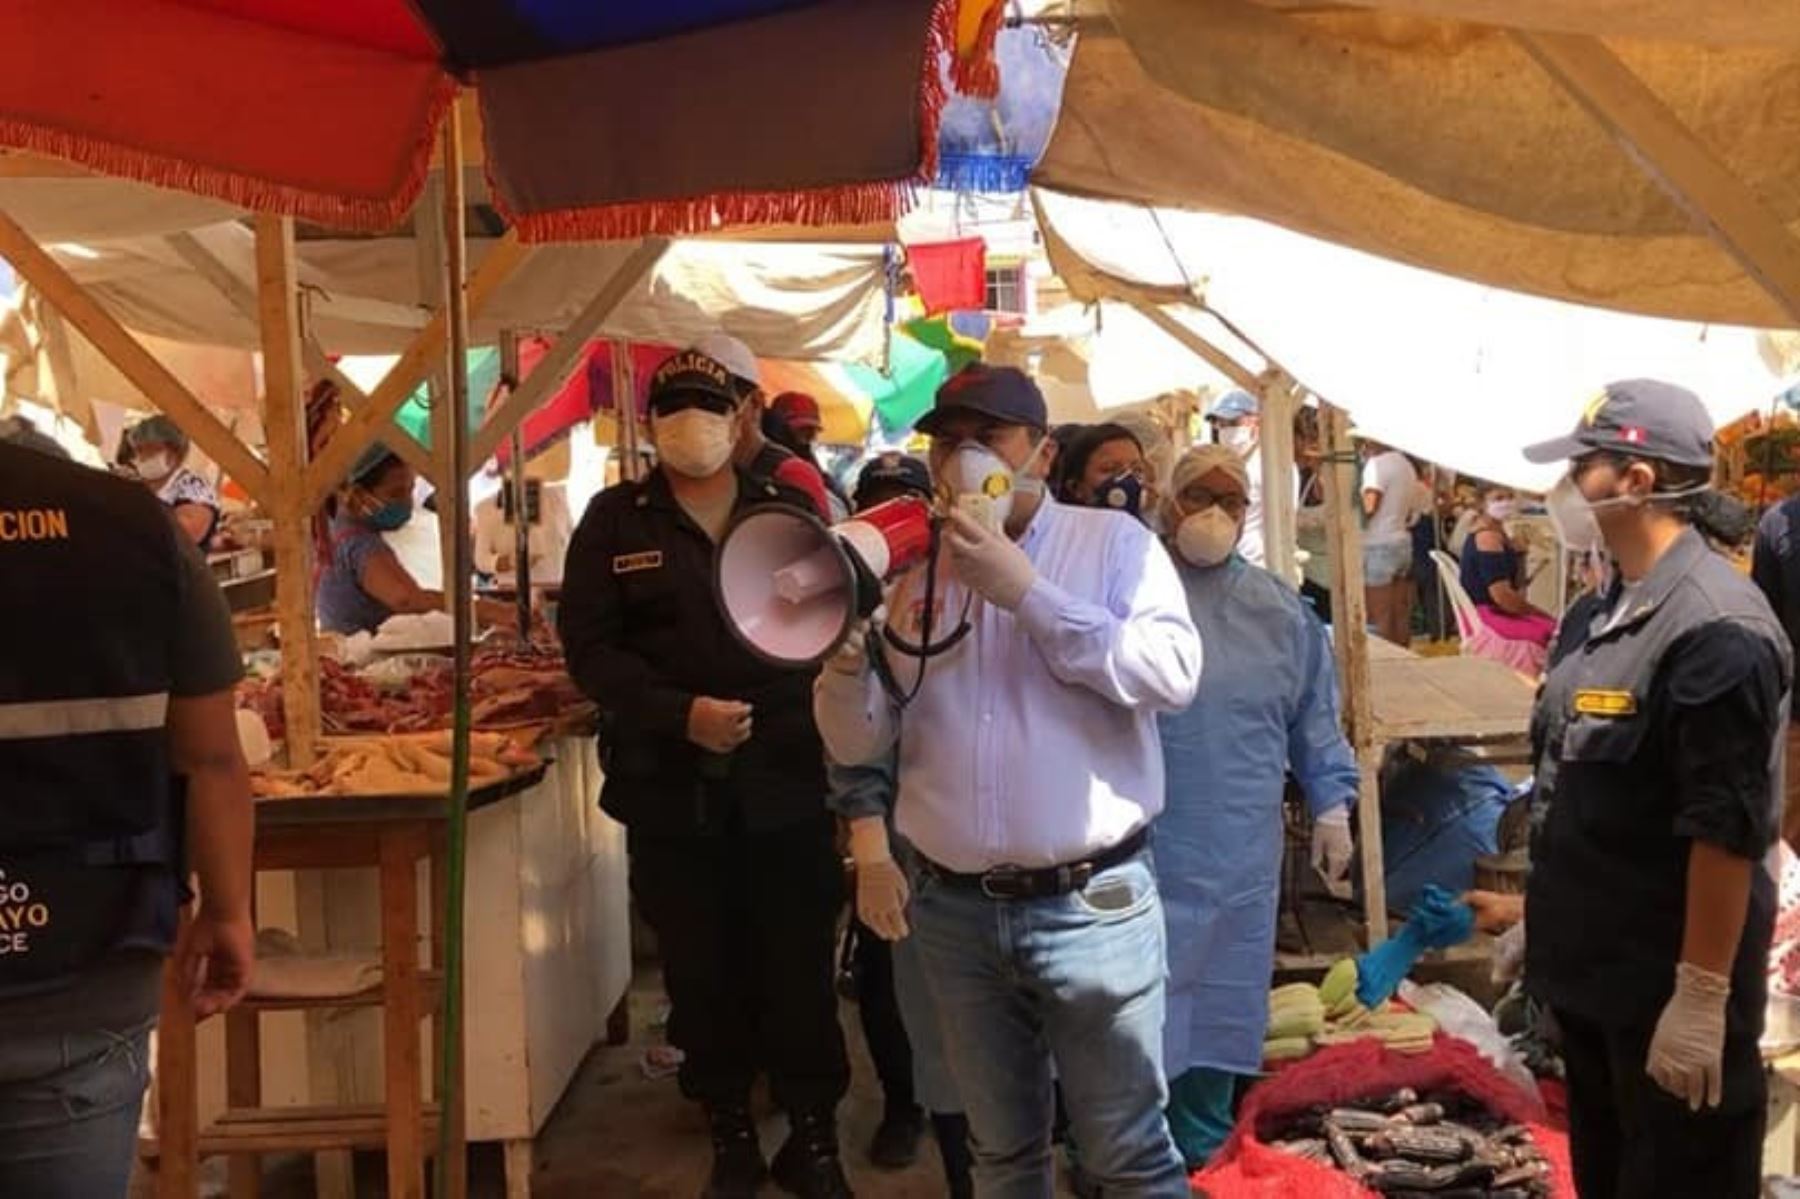 Alcalde de Chiclayo, Marcos Gasco, recorrió mercados de su ciudad para exhortar a la población a respetar la cuarentena por coronavirus.ANDINA